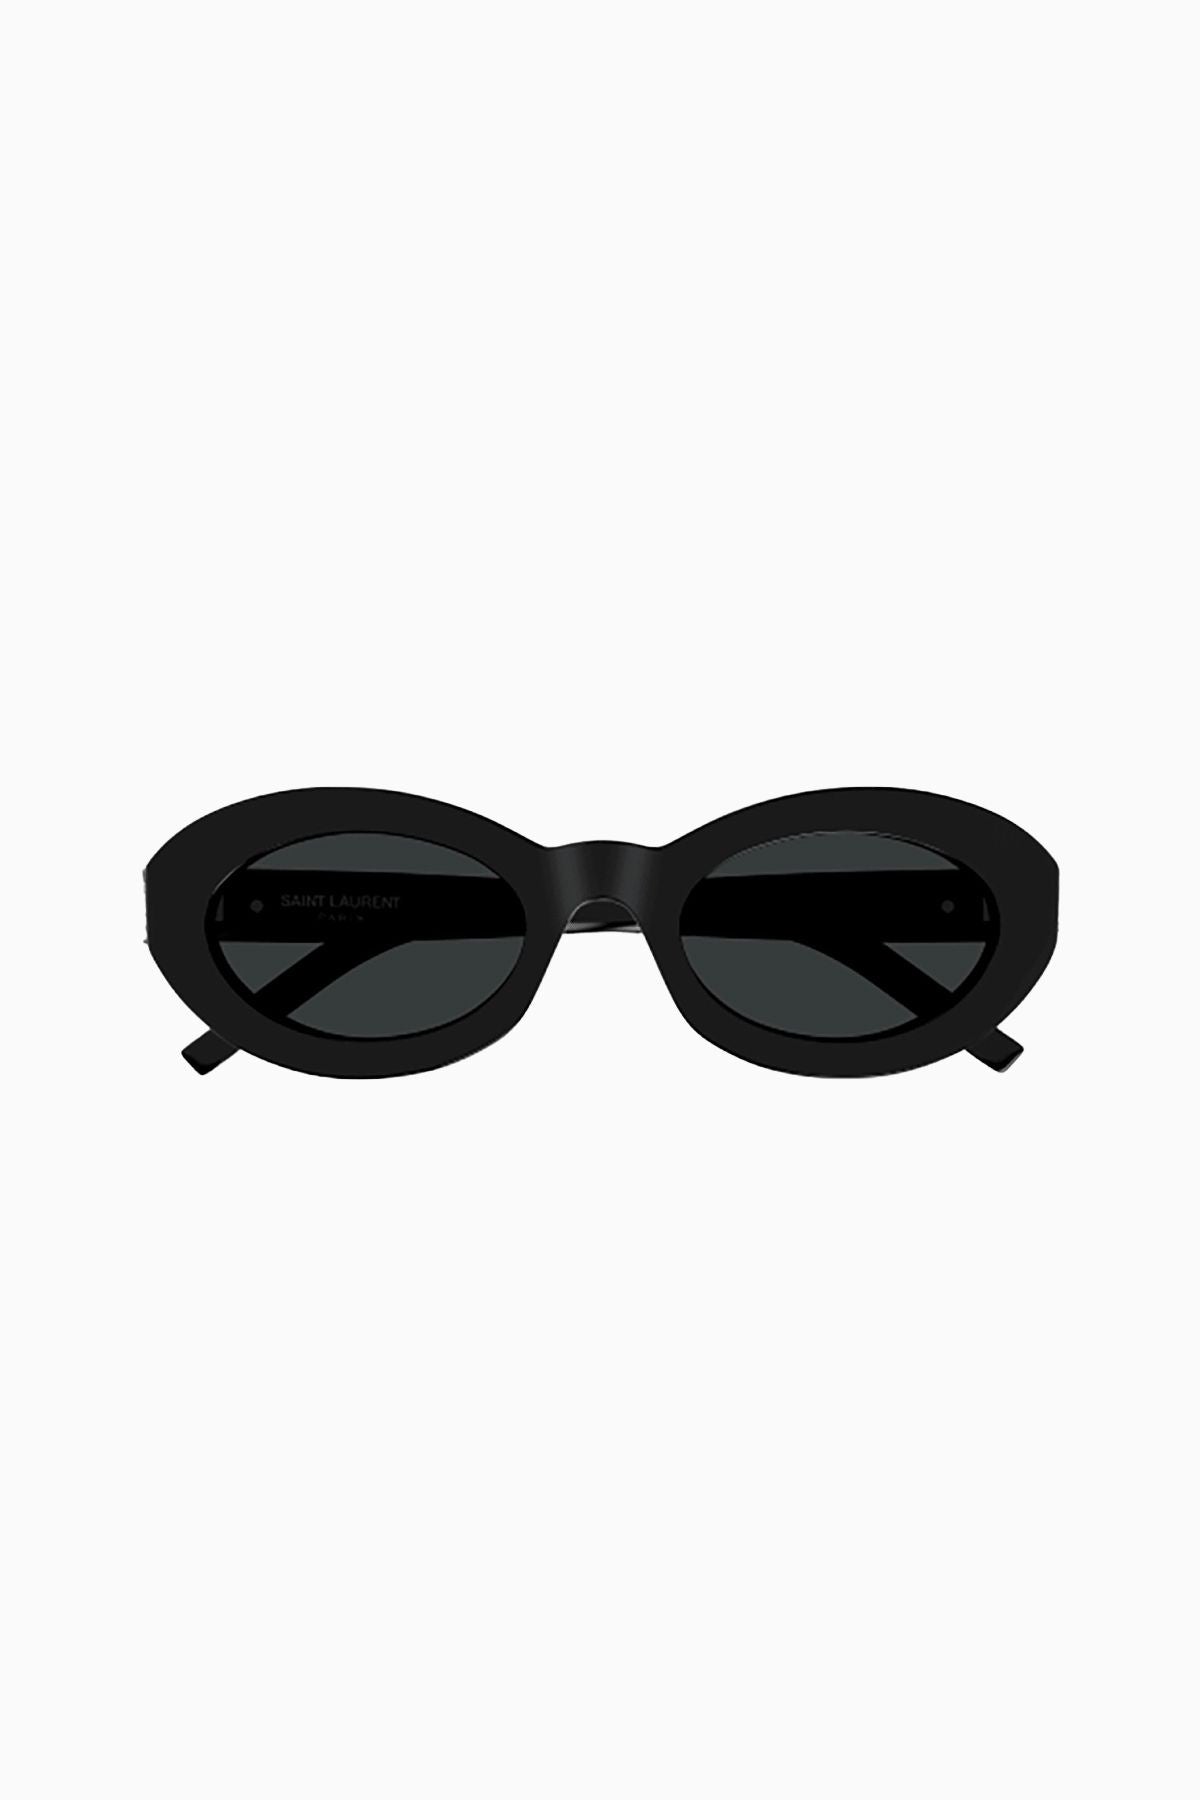 Saint Laurent Oval Sunglasses - Black